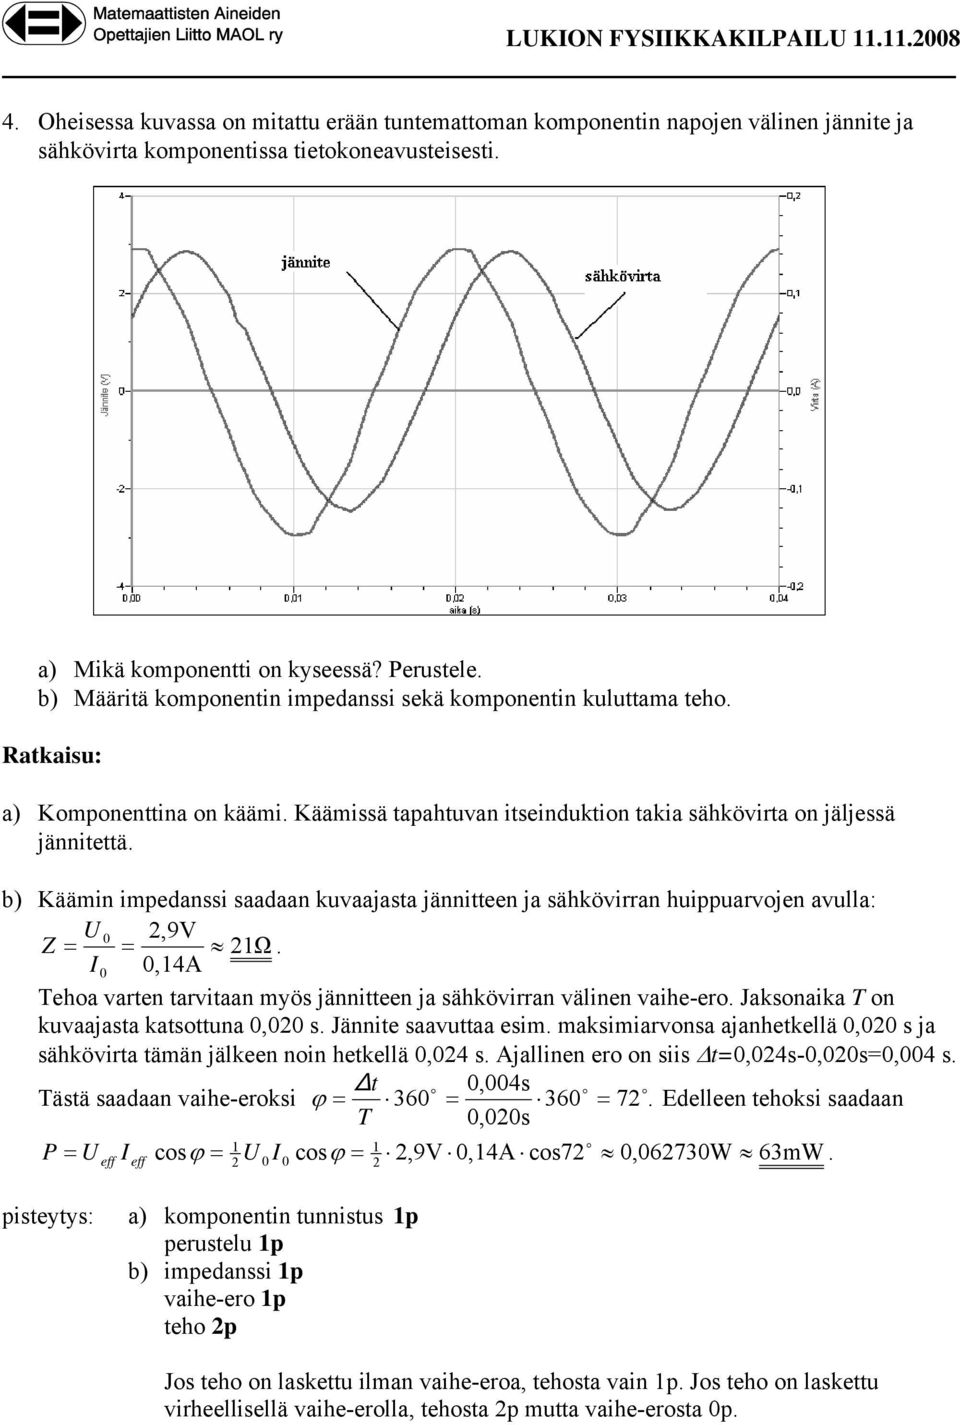 Käämissä tapahtuvan itseinduktion takia sähkövirta on jäljessä jännitettä. b) Käämin impedanssi saadaan kuvaajasta jännitteen ja sähkövirran huippuarvojen avulla: U 0,9V Z = = 1Ω.